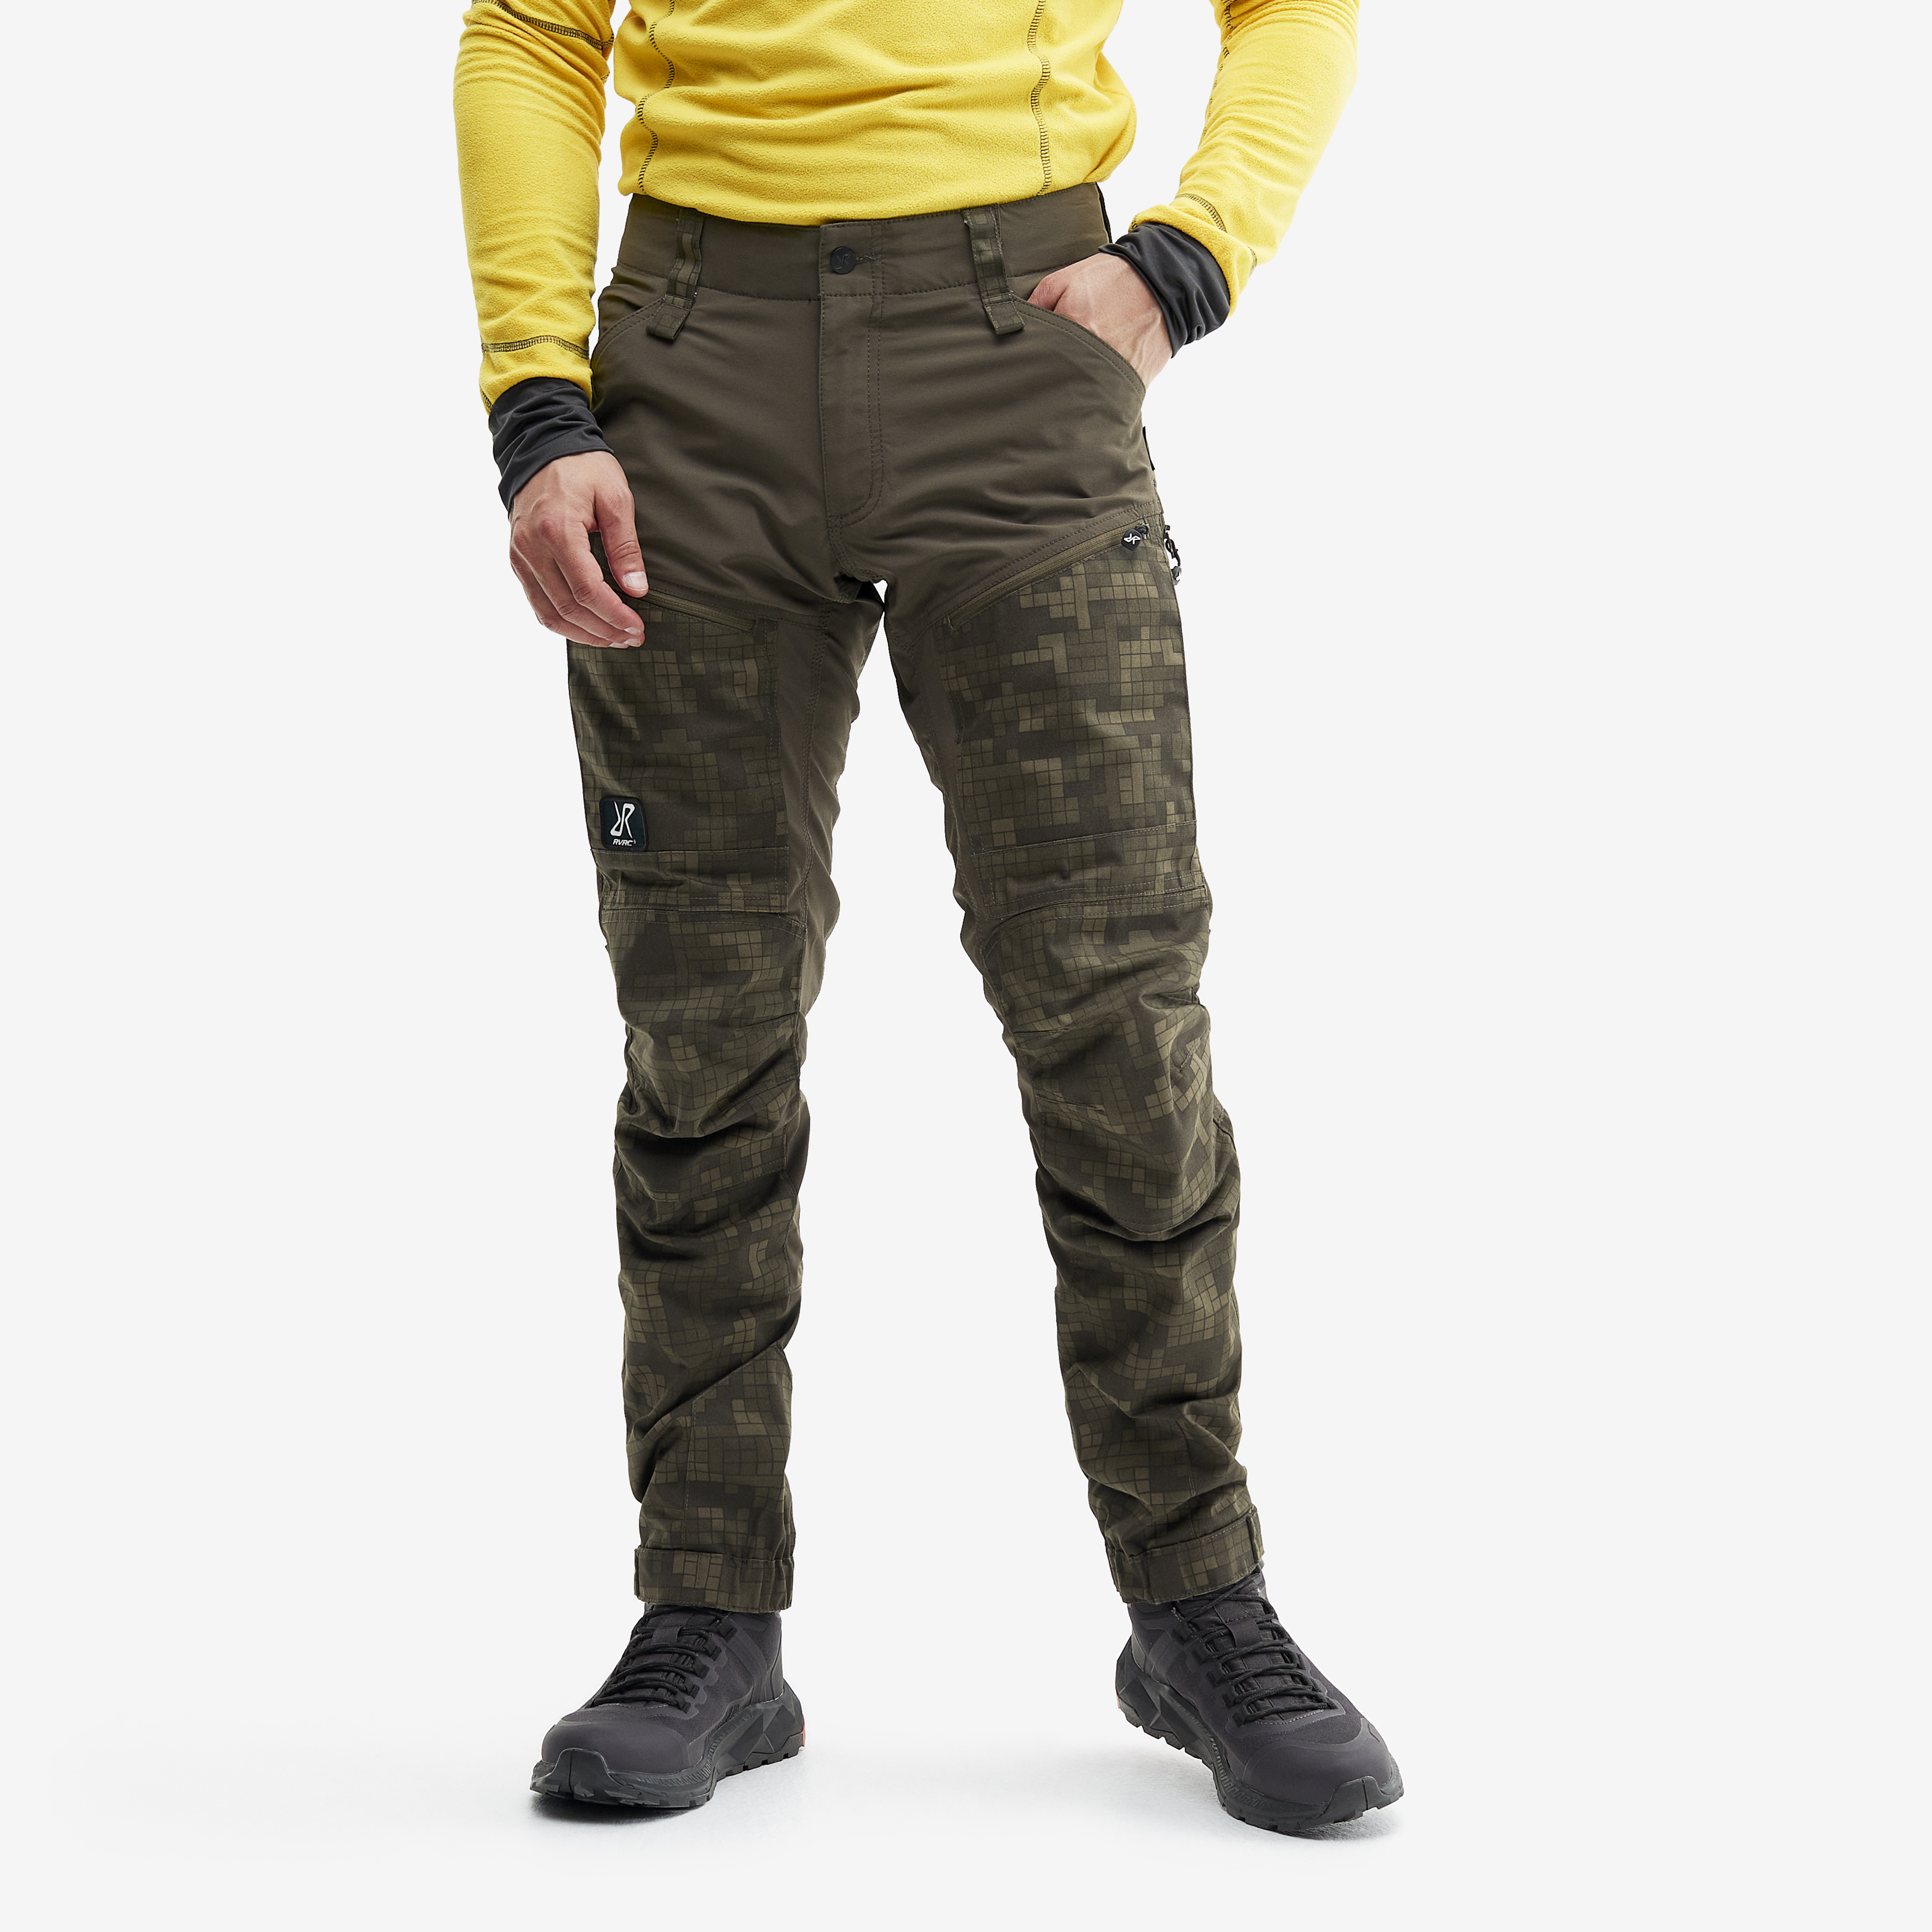 RVRC GP Pro turistické kalhoty pro muže v hnědé barvě